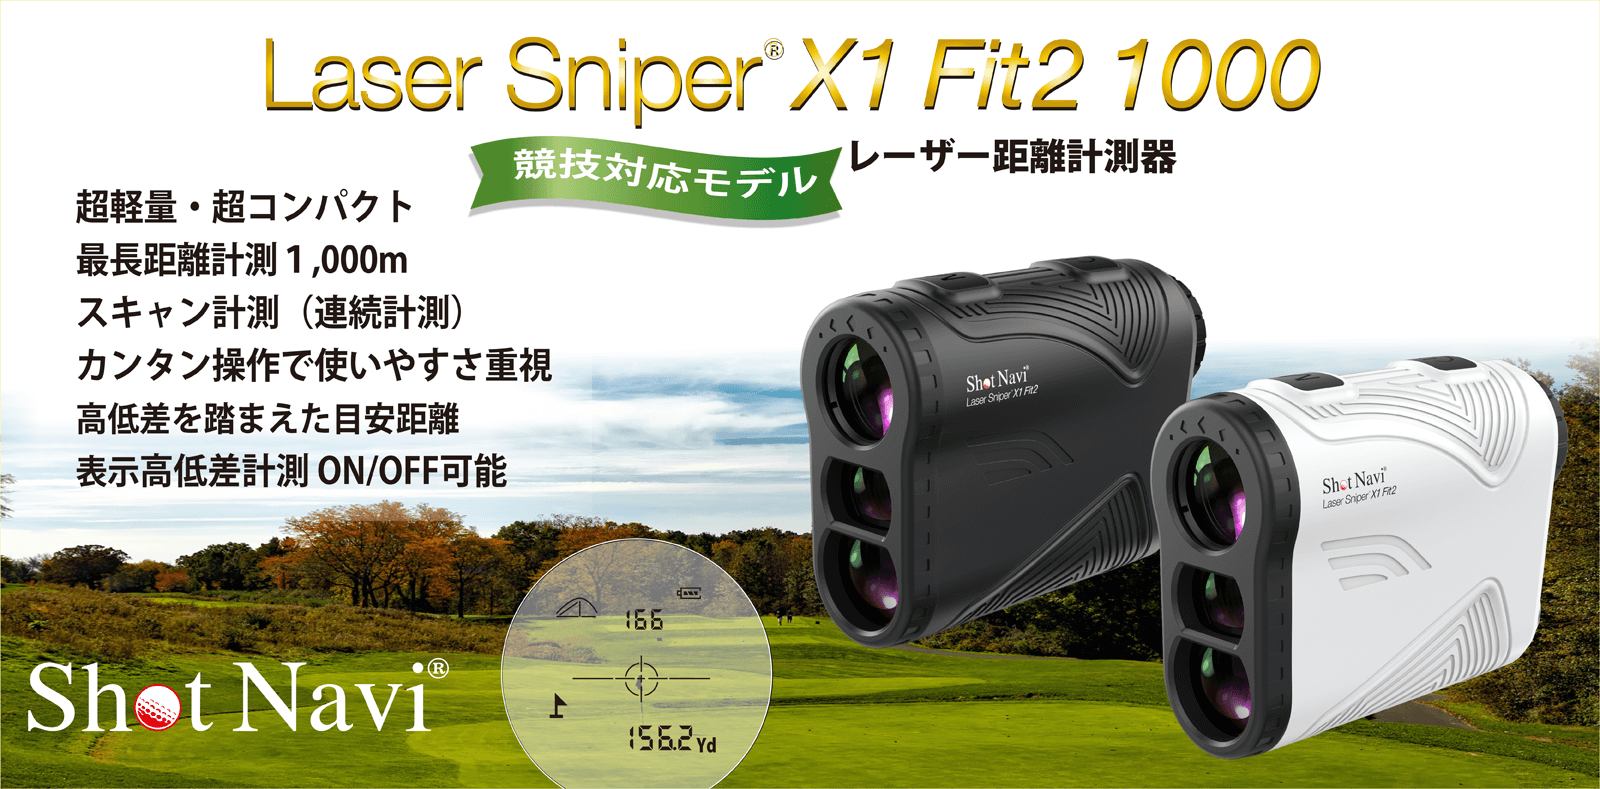 Shot Navi Laser Sniper X1 Fit2 1000